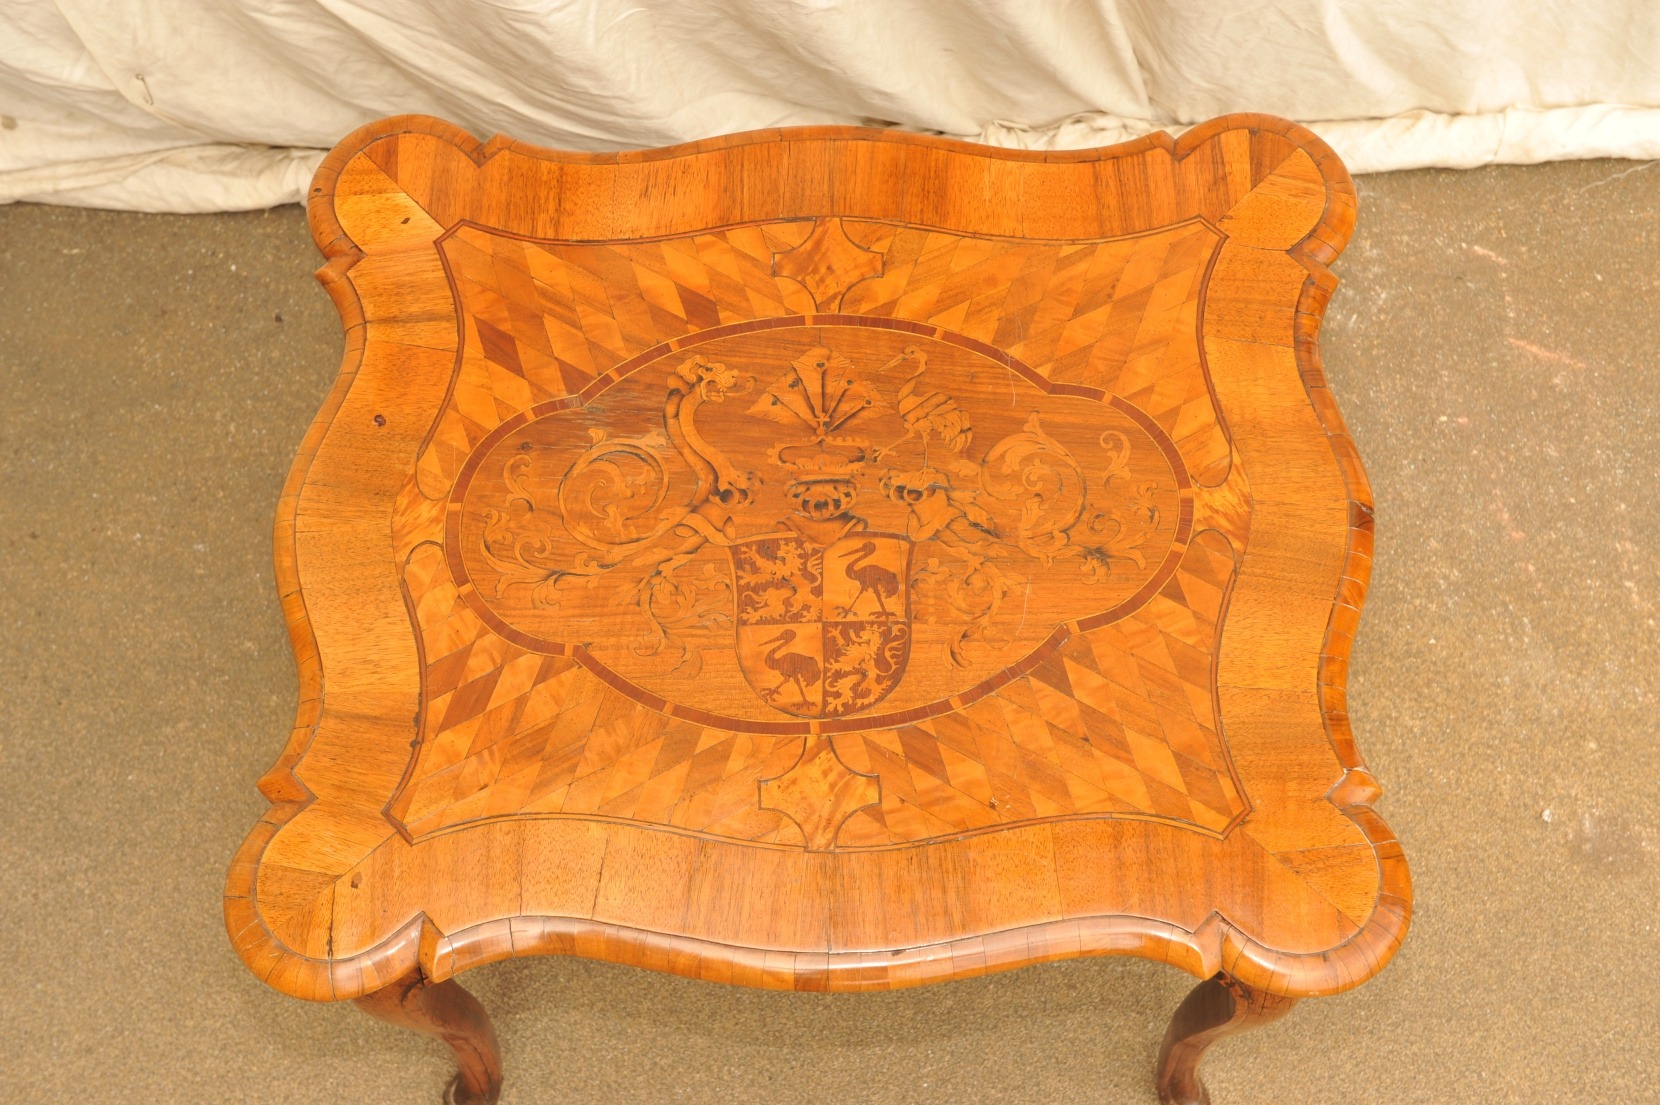 Barocktisch von 1750 mit Wappen der Reußen